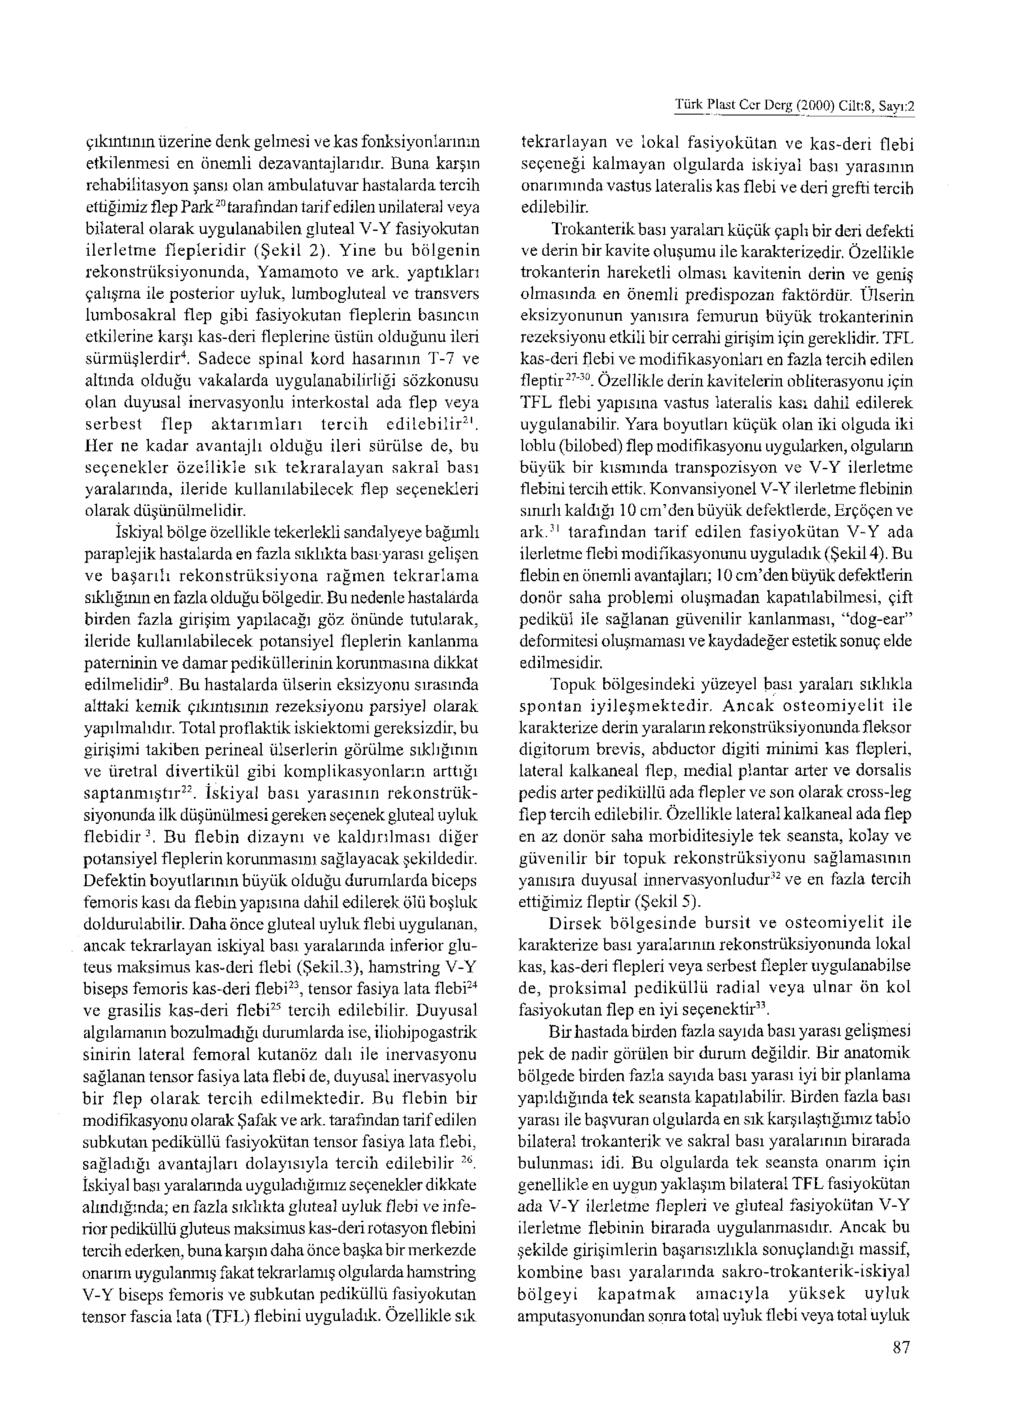 Türk Plast Cer Derg (2000) Cilt: 8, Sayı:2 çıkıntının üzerine denk gelmesi ve kas fonksiyonlarının etkilenmesi en önemli dezavantajlarıdır.